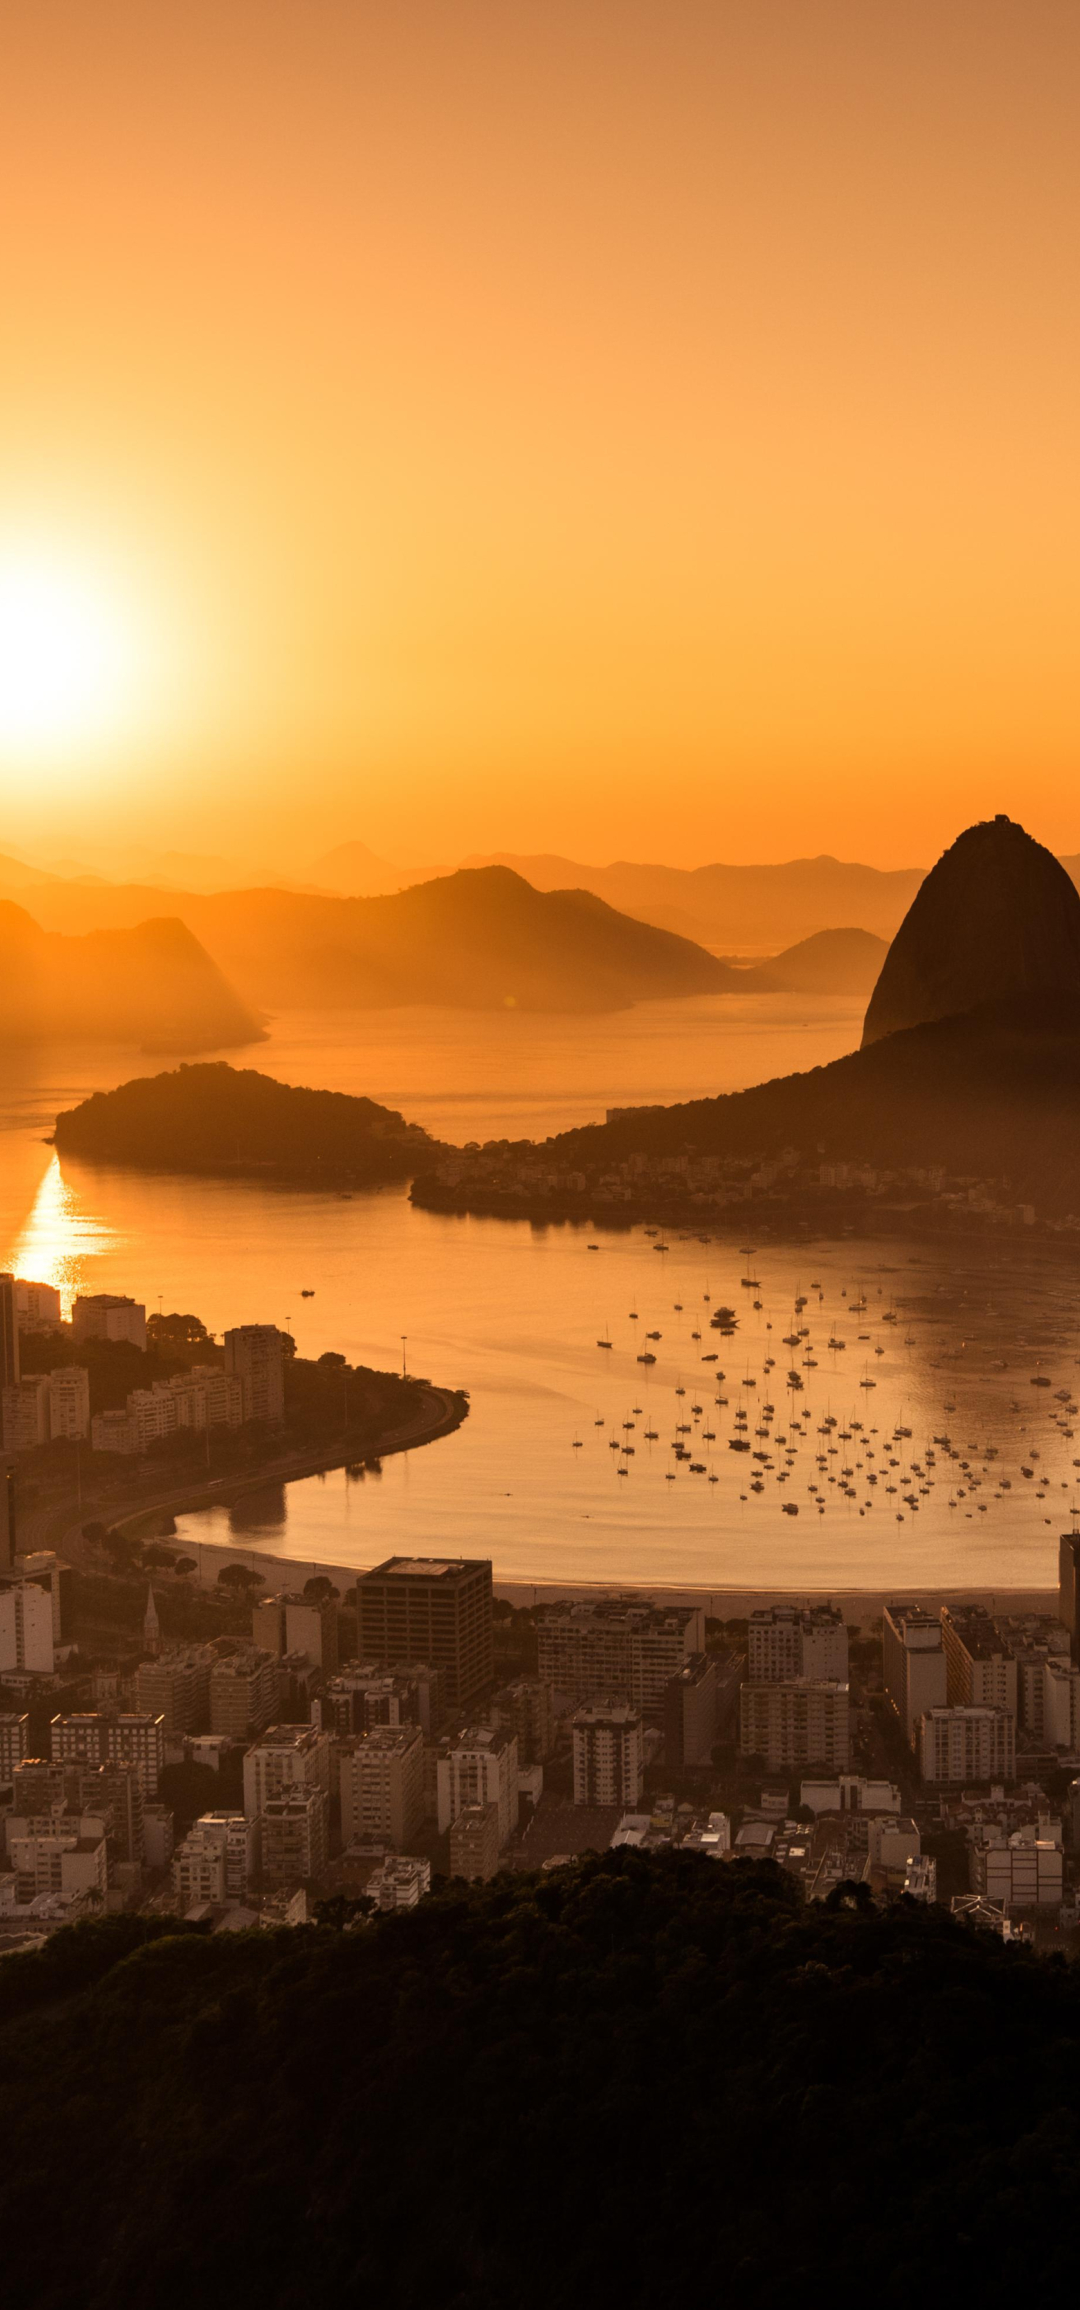 1080x2310 Sunset in Rio De Janeiro 5K 1080x2310 Resolution Wallpaper ...